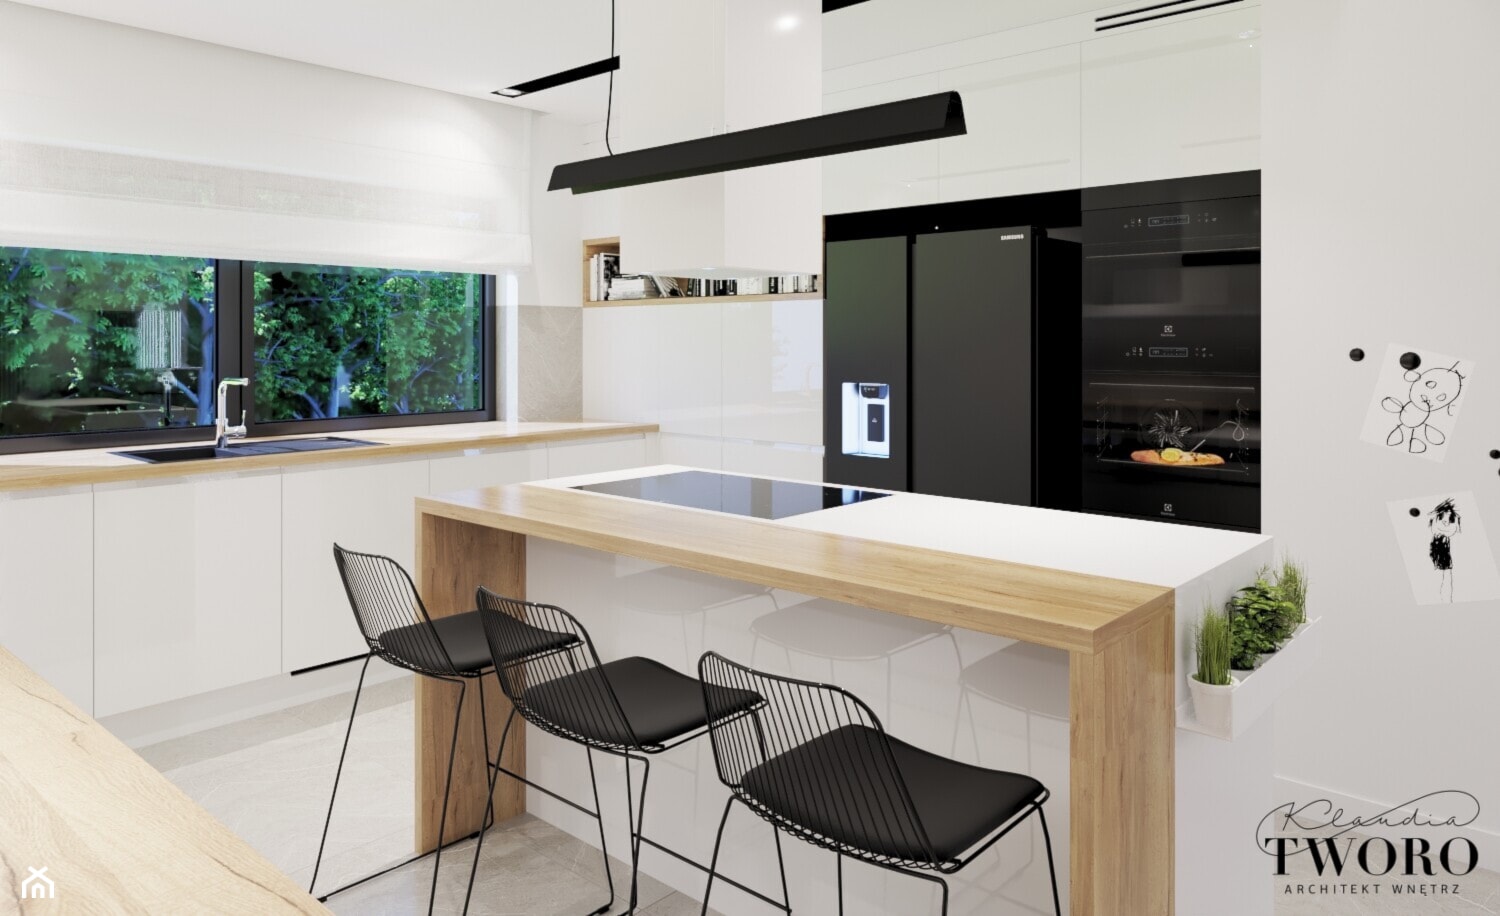 Dom Madera 2 - Kuchnia, styl nowoczesny - zdjęcie od Klaudia Tworo Projektowanie Wnętrz - Homebook